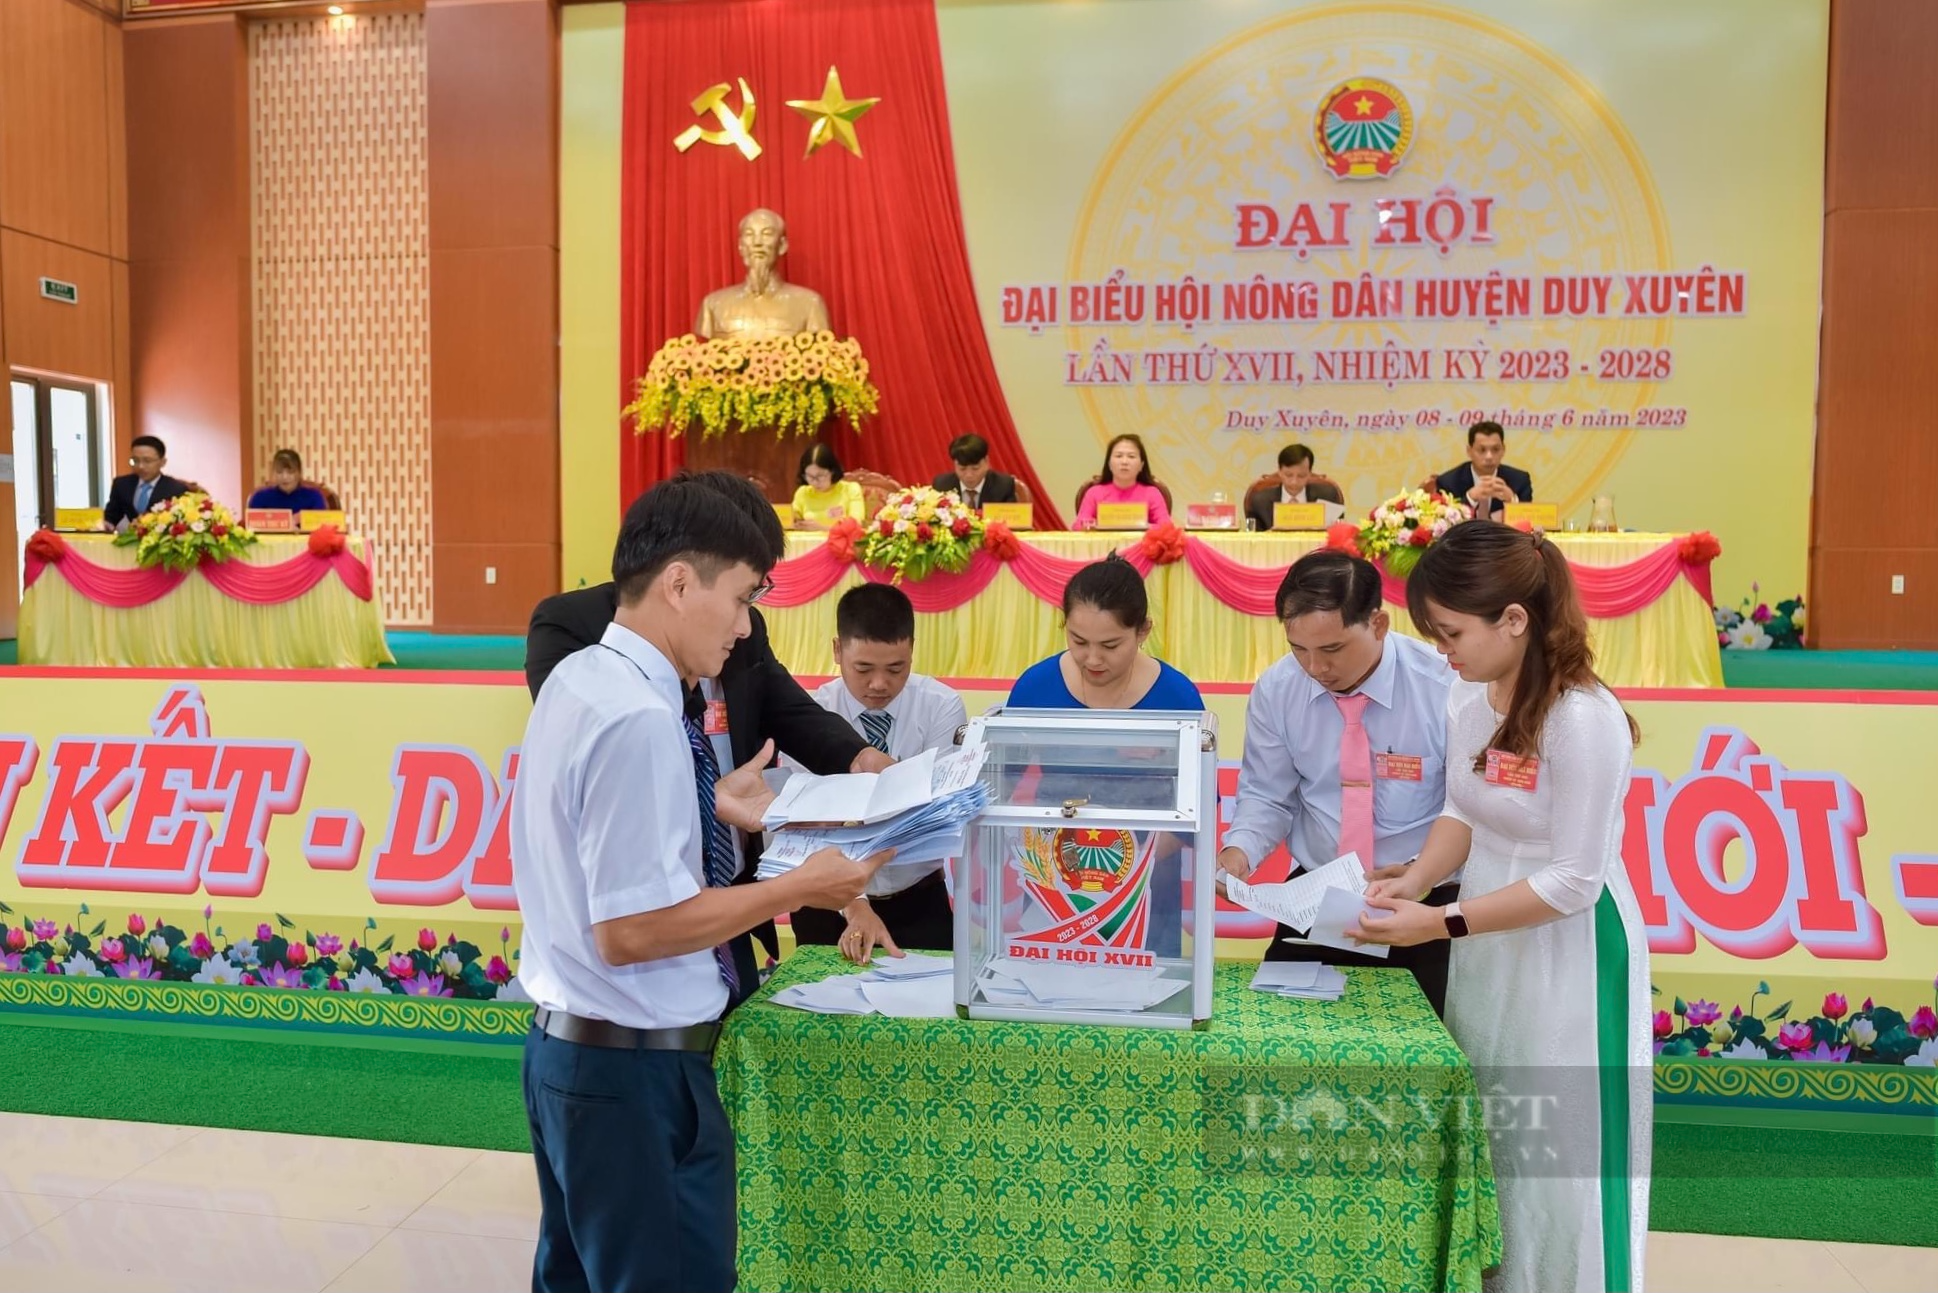 Quảng Nam: Nhiều Hội Nông dân cấp huyện tổ chức thành công Đại hội đại biểu nhiệm kỳ 2023-2028 - Ảnh 4.